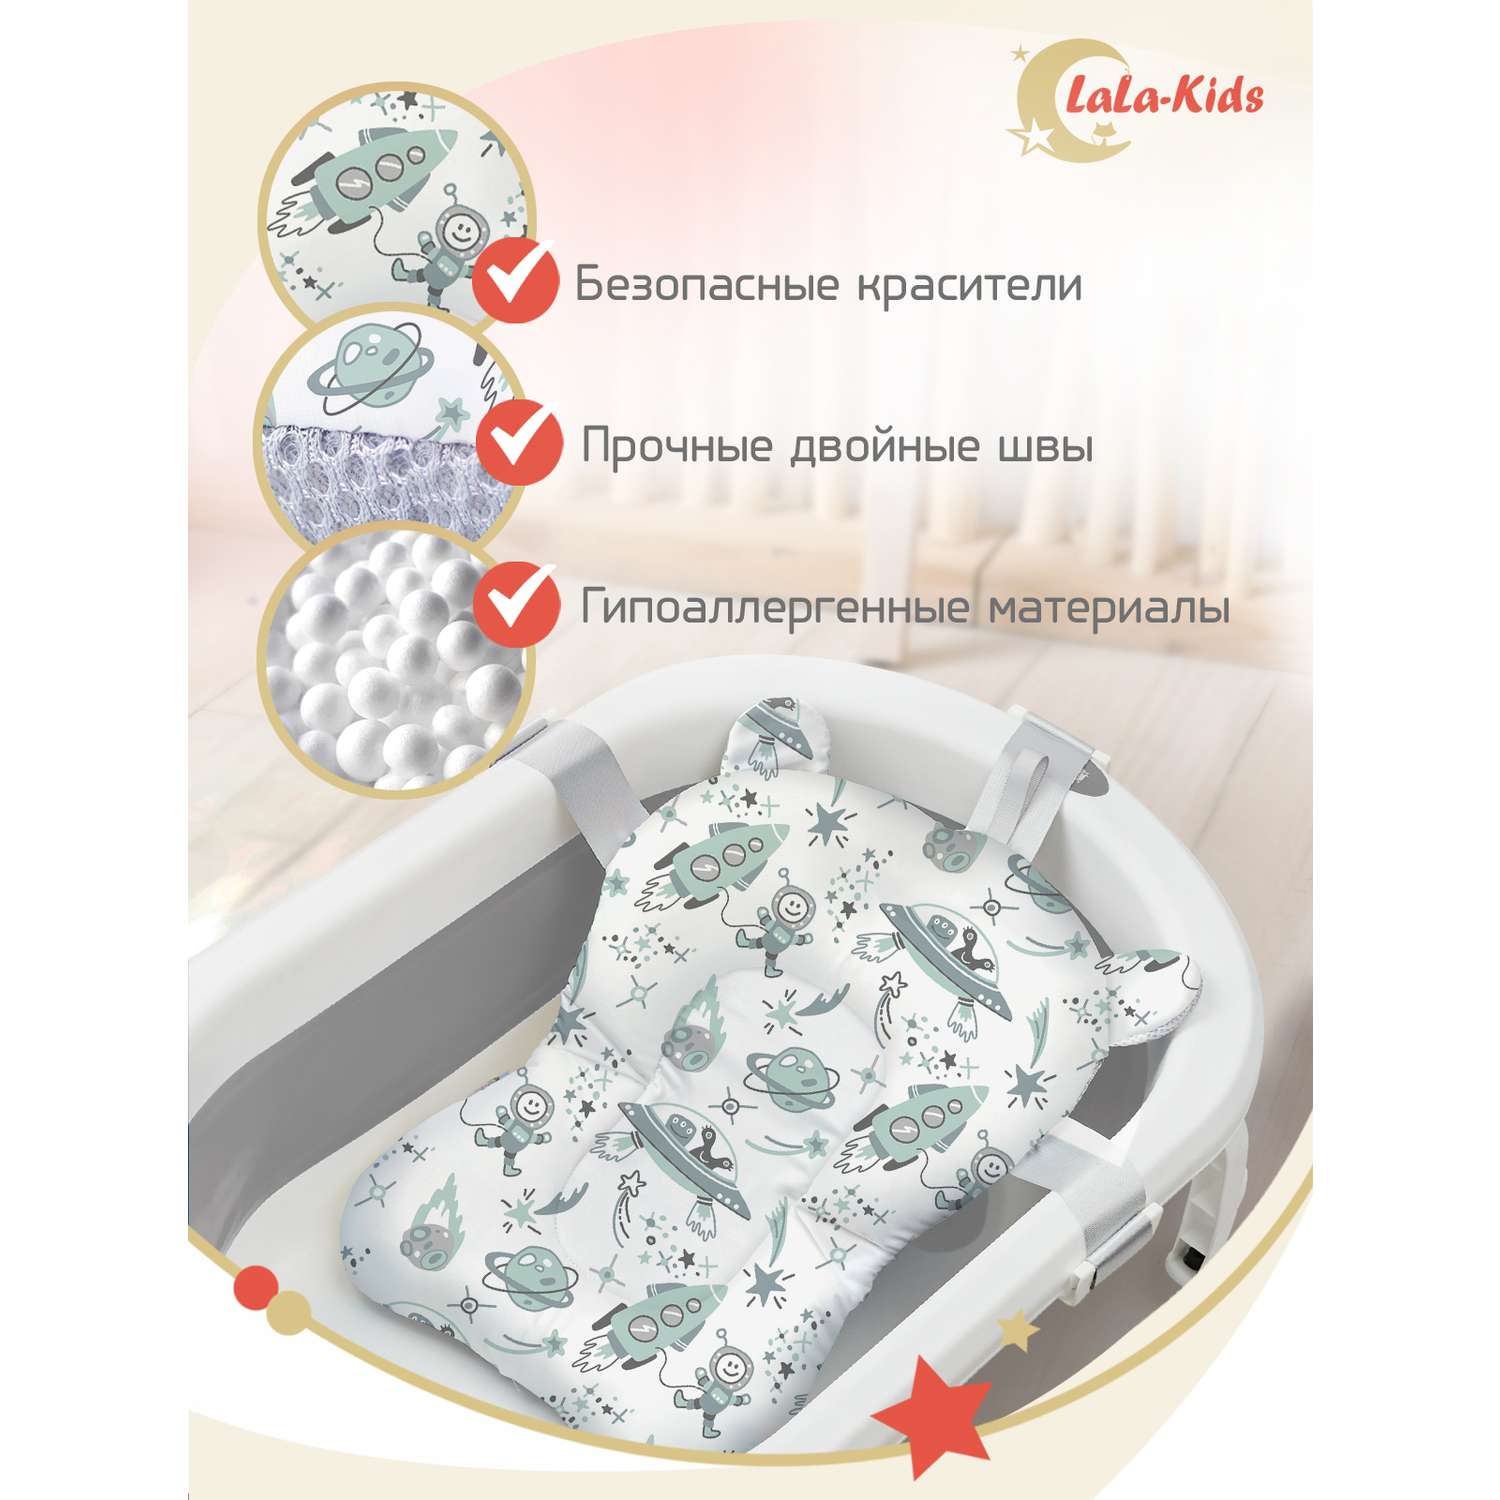 Складная ванночка LaLa-Kids для купания новорожденных с термометром и матрасиком в комплекте - фото 13